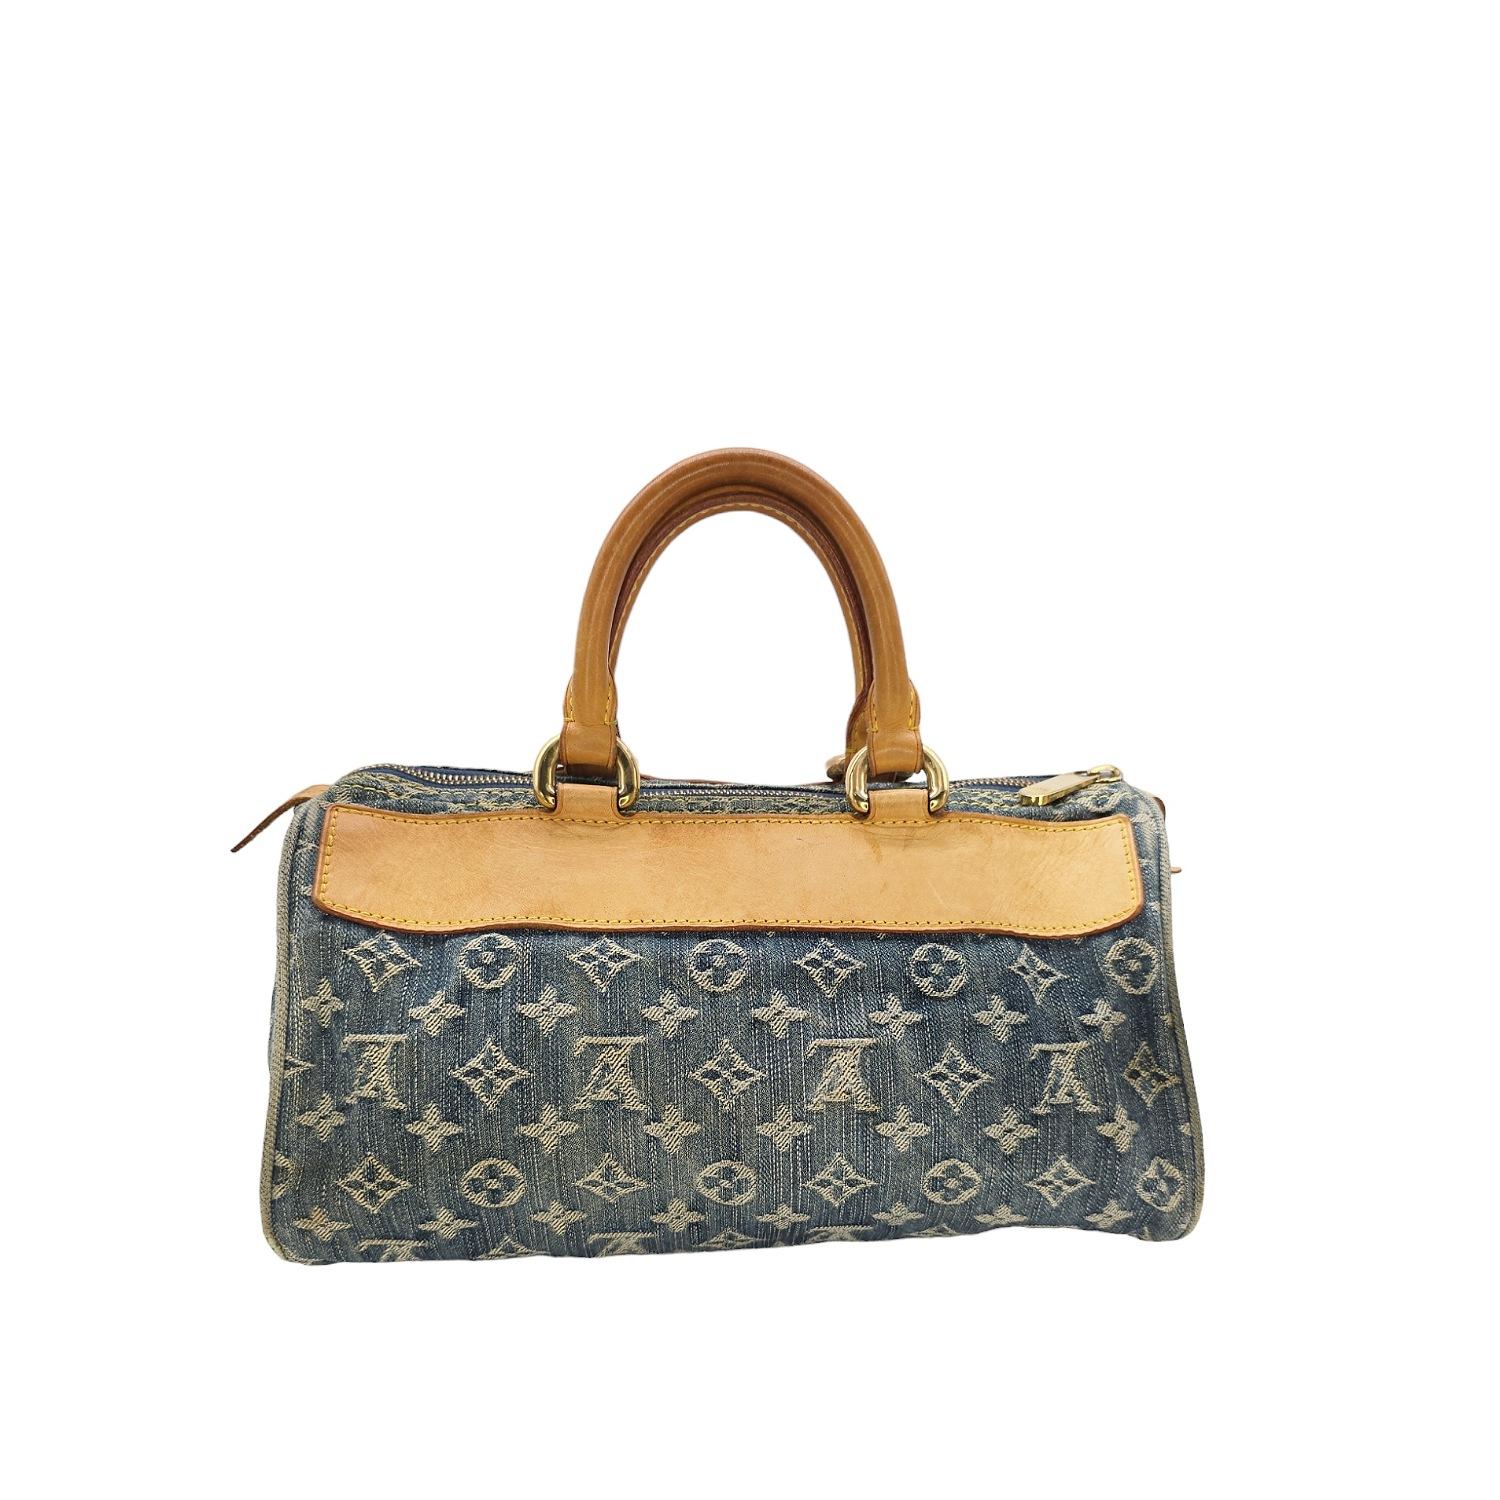 Louis Vuitton Monogram Denim Neo Speedy Handbag In Good Condition For Sale In Scottsdale, AZ